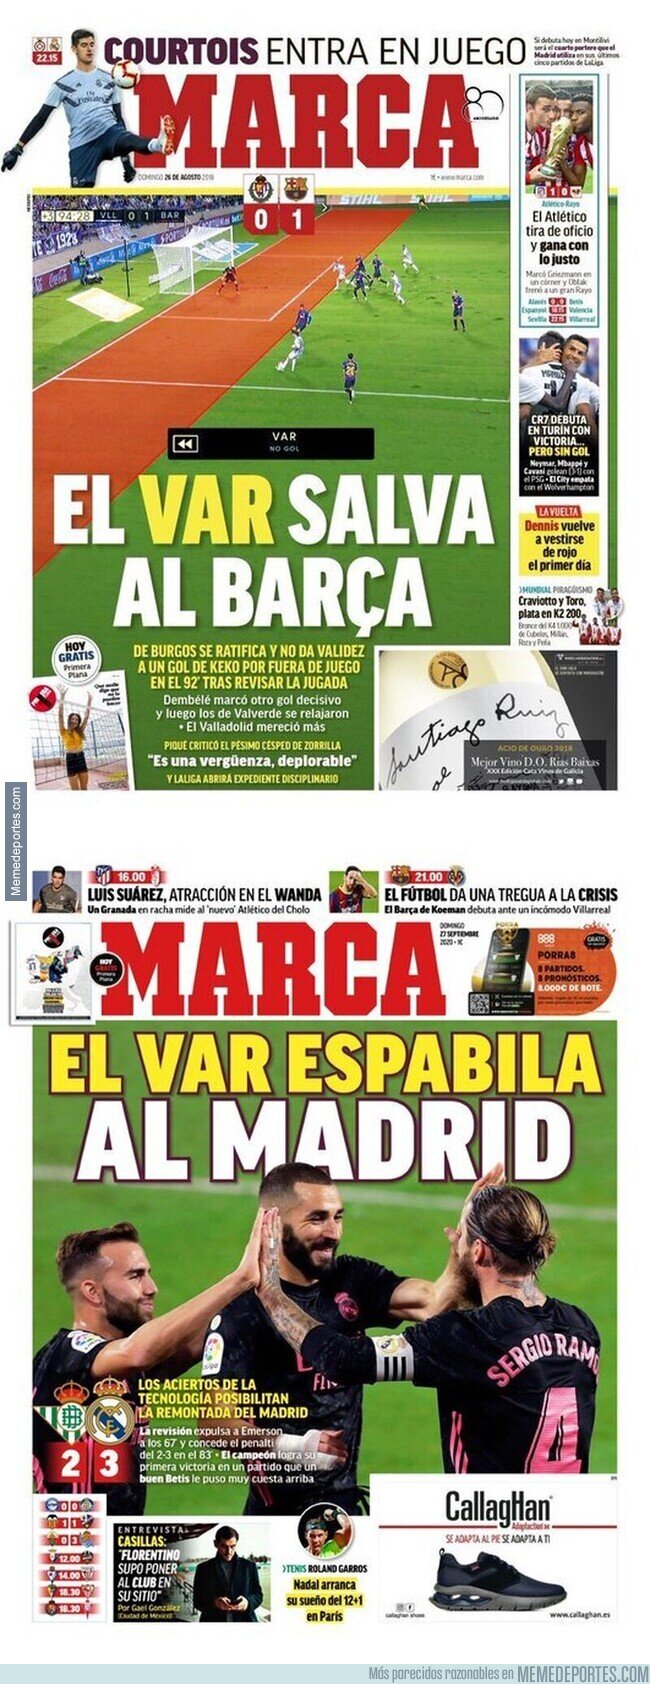 1116643 - El doble rasero increíble del diario MARCA cuando el VAR favorece al Barça y al Madrid